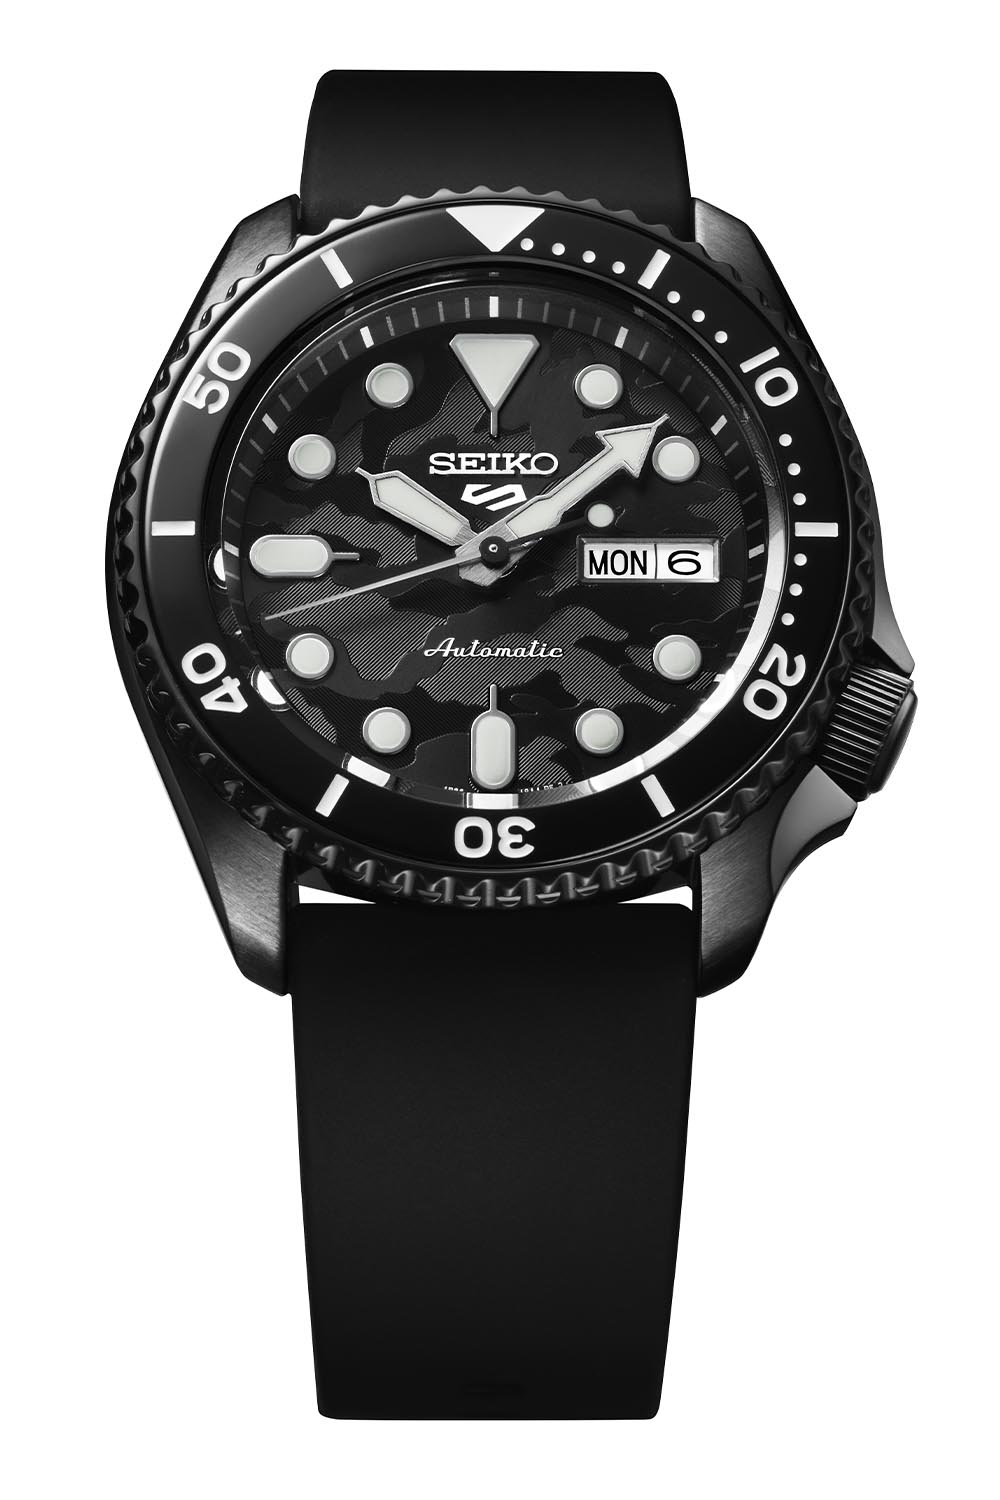 Seiko 5 Sports 100M LE Yuto Horigome Automatic Men's Watch Black Camo Dial SRPJ39K1